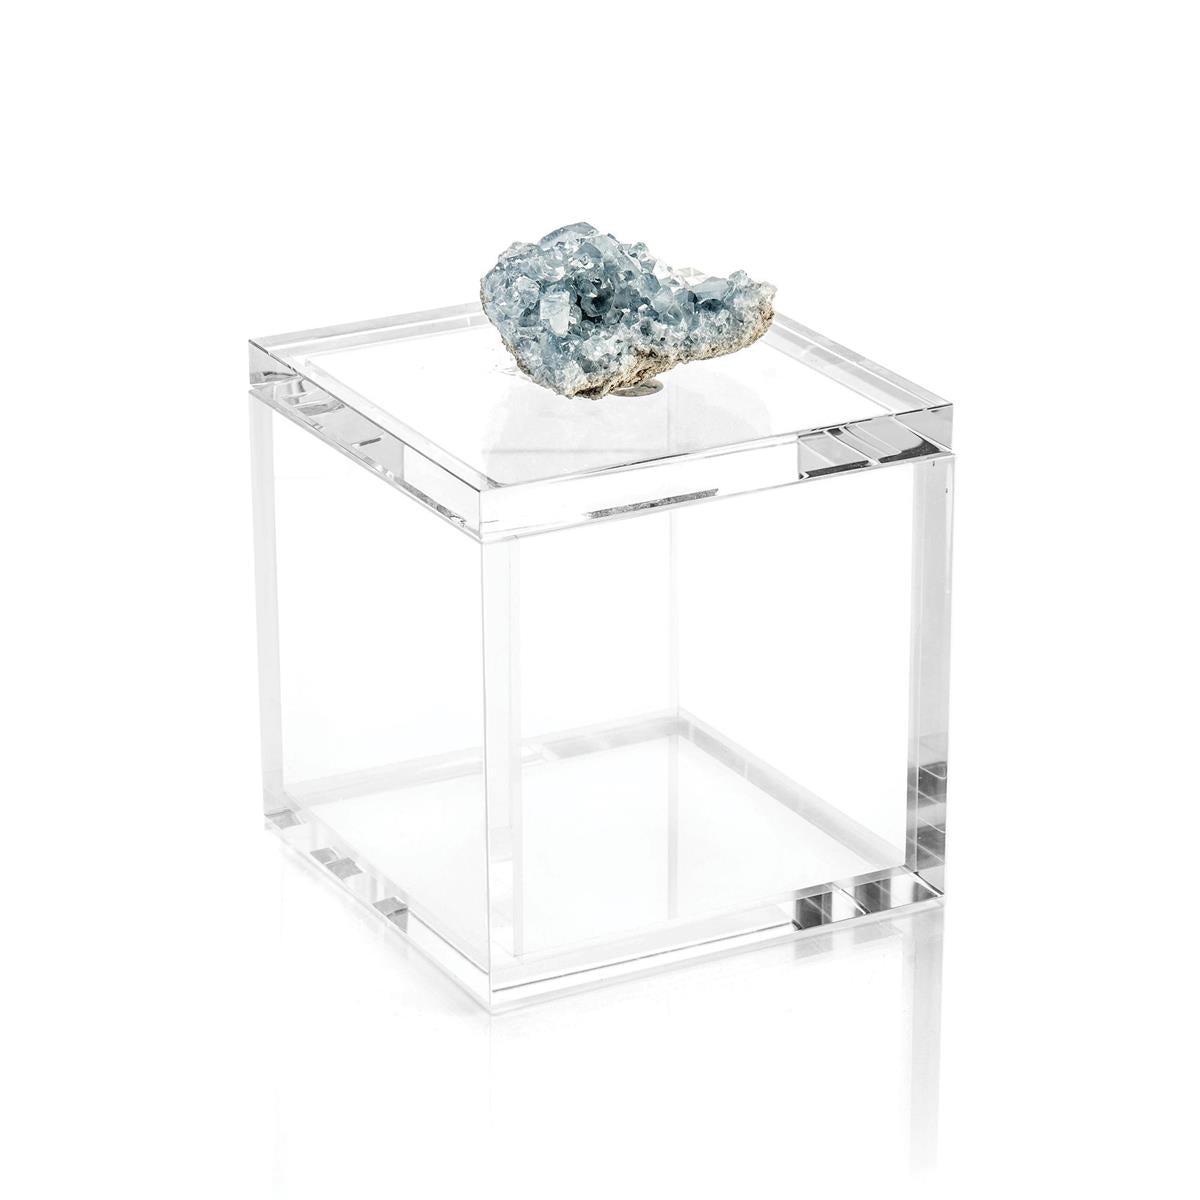 Crystal Celestite Box-John Richard-Sculptures & Objects-Artistic Elements